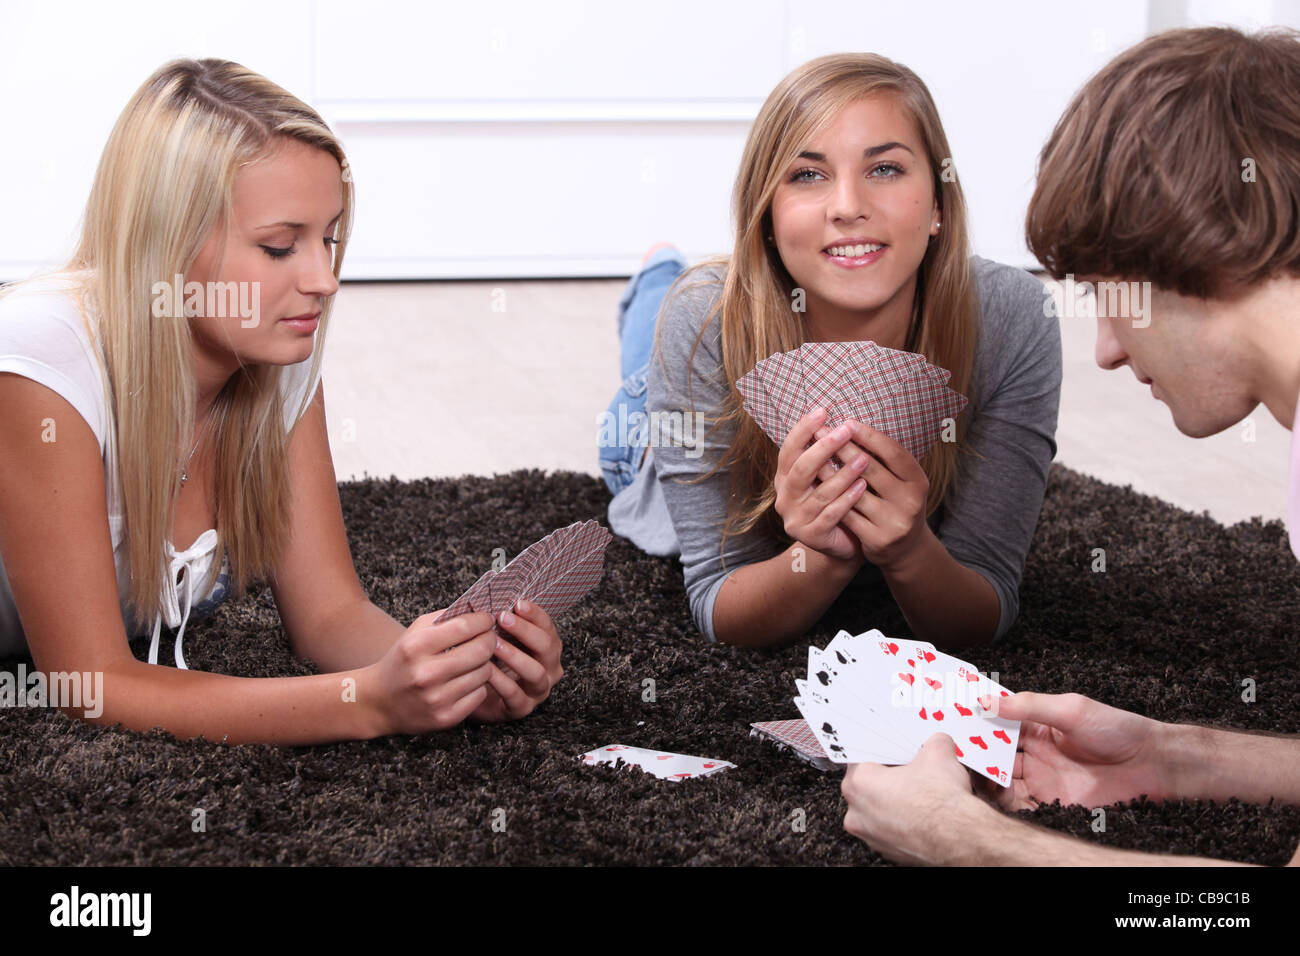 Поиграли в карты на раздевание. Мальчик и девочка играют в карты. Девочки играют в карты. Девочки играют в карты на раздевание. Девушки играющие в карты.